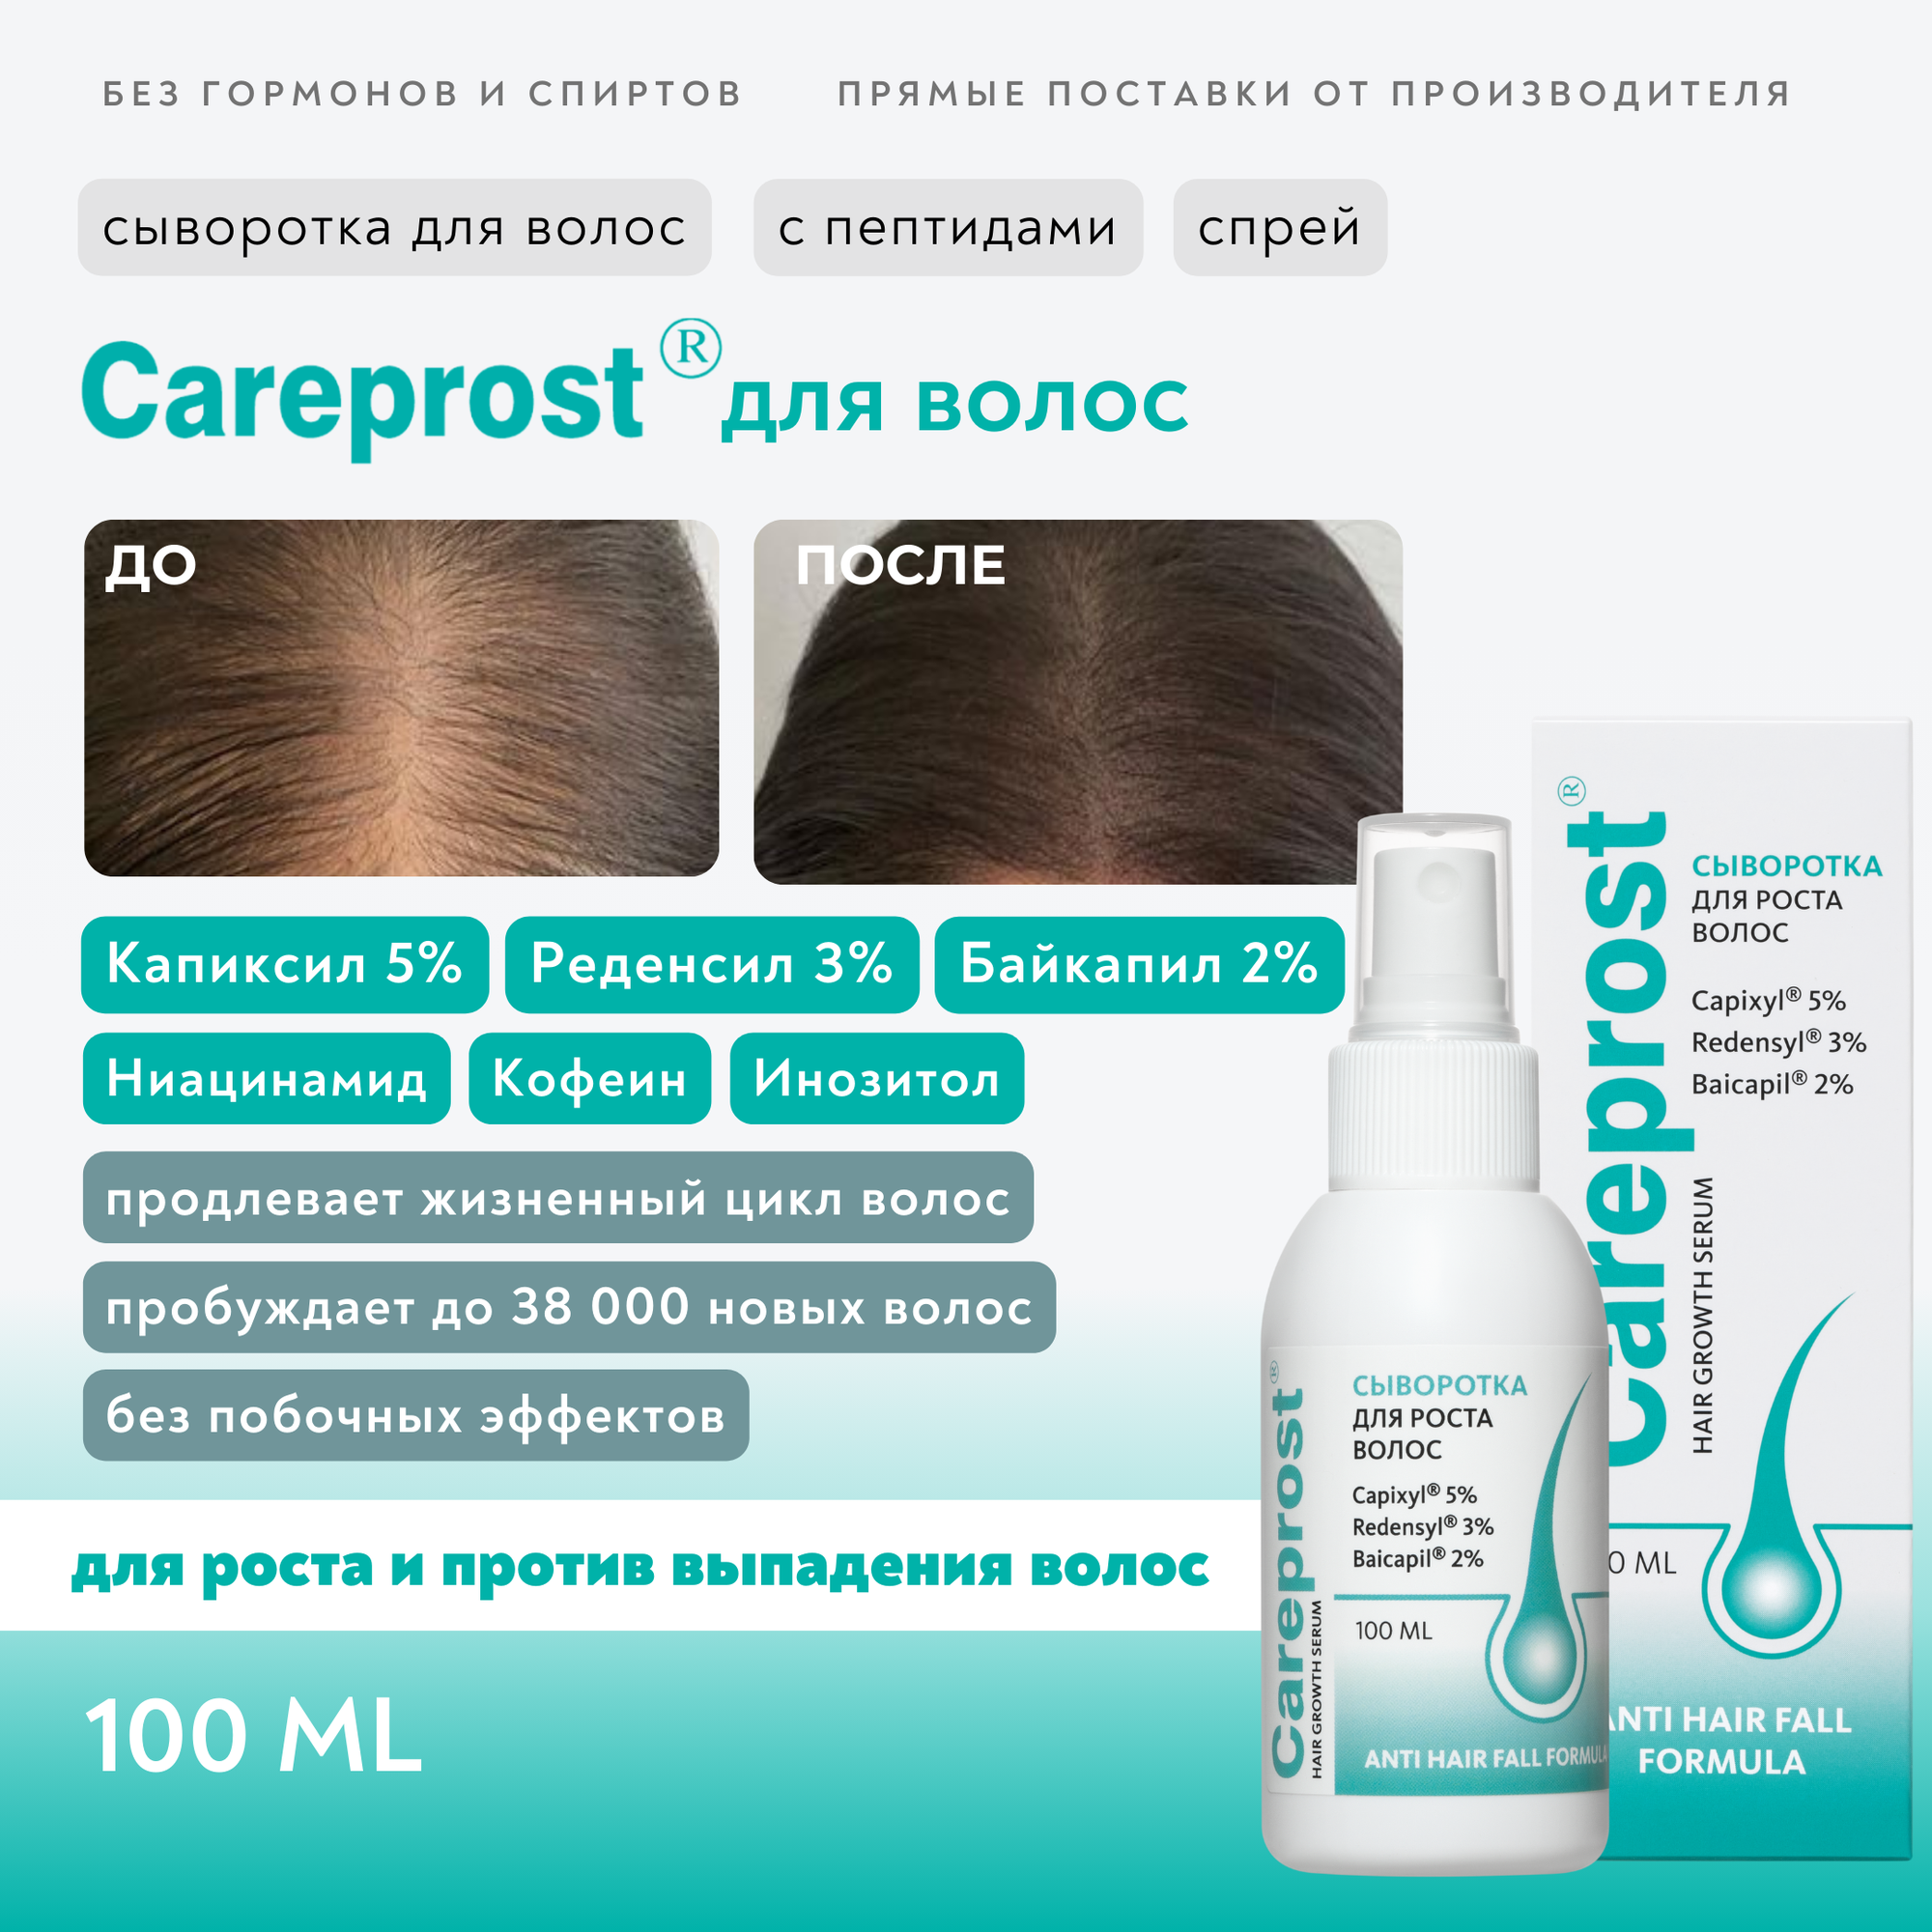 Сыворотка для роста волос Careprost (Карепрост), Капиксил 5%, Реденсил 3%, Байкапил 2%